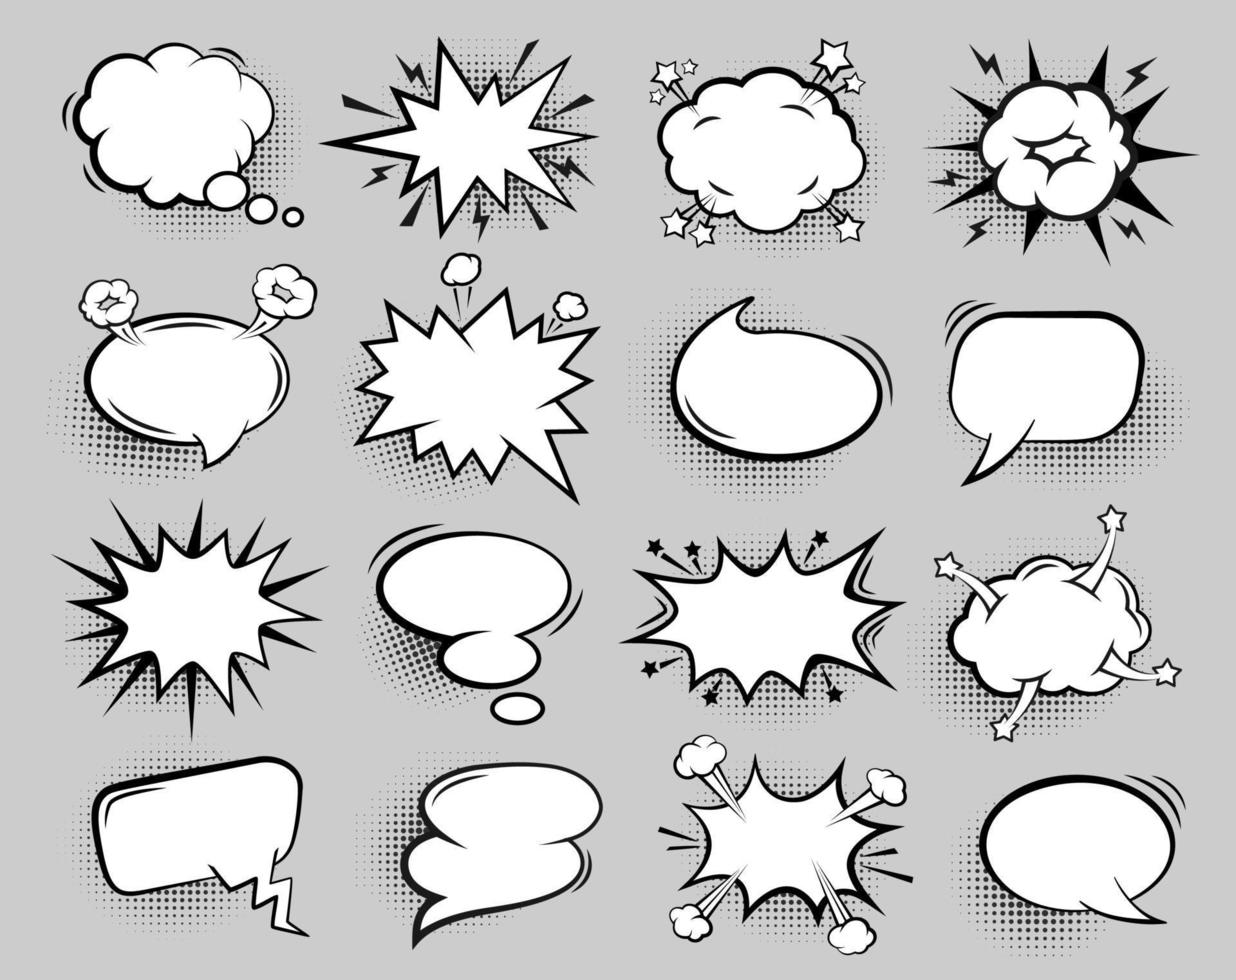 vide bande dessinée bulle. dessin animé discours des ballons pour texte, rétro bavarder parler dialogue des nuages avec demi-teinte ombre effet vecteur isolé ensemble